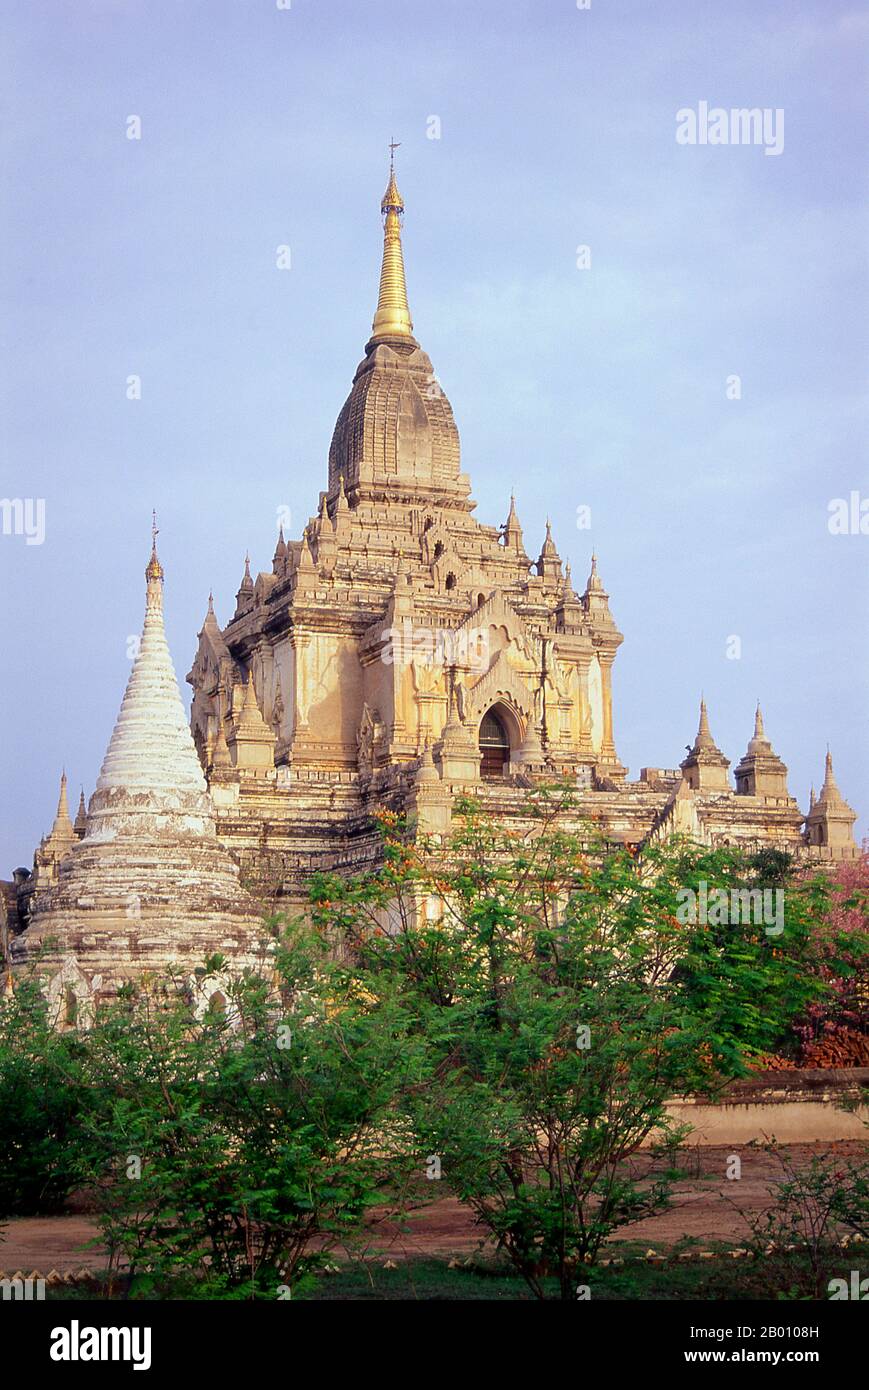 Burma: Gawdawpalin Tempel, Bagan (Pagan) Alte Stadt. Der Bau des Gawdawpalin Tempels begann während der Herrschaft von Narapatisithu (1174–1211) und wurde während der Herrschaft von Htilominlo (1121–1234) abgeschlossen. Gawdawpalin Tempel ist der zweithöchste Tempel in Bagan. Bagan, früher Pagan, wurde hauptsächlich zwischen dem 11th. Und 13th. Jahrhundert erbaut. Offiziell Arimaddanapura oder Arimaddana (die Stadt des feindlichen Crusher) und auch als Tambadipa (das Land des Kupfers) oder Tassadessa (das vertrocknende Land) bekannt, war es die Hauptstadt mehrerer alter Königreiche in Burma. Stockfoto